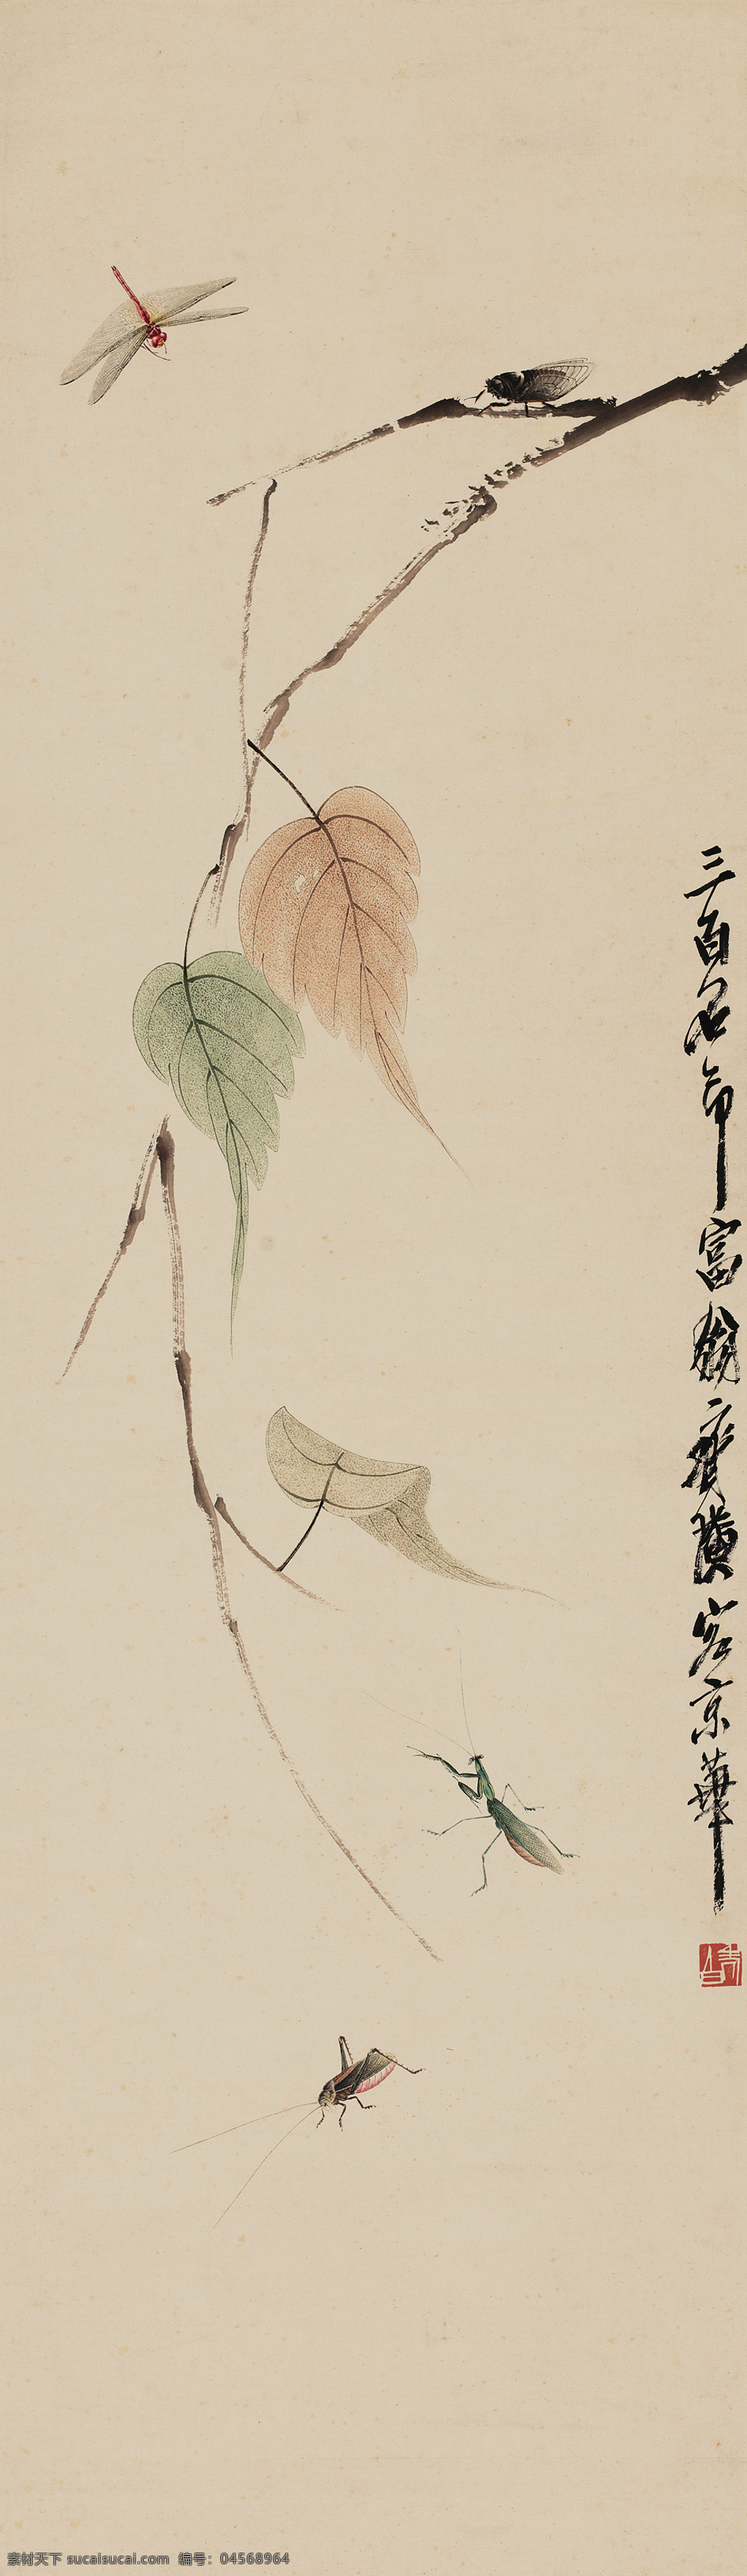 三百石印 齐白石作品 秋天 红叶绿叶 蜻蜓 知了 螳螂 蟋蟀 中国古代画 中国古画 文化艺术 绘画书法